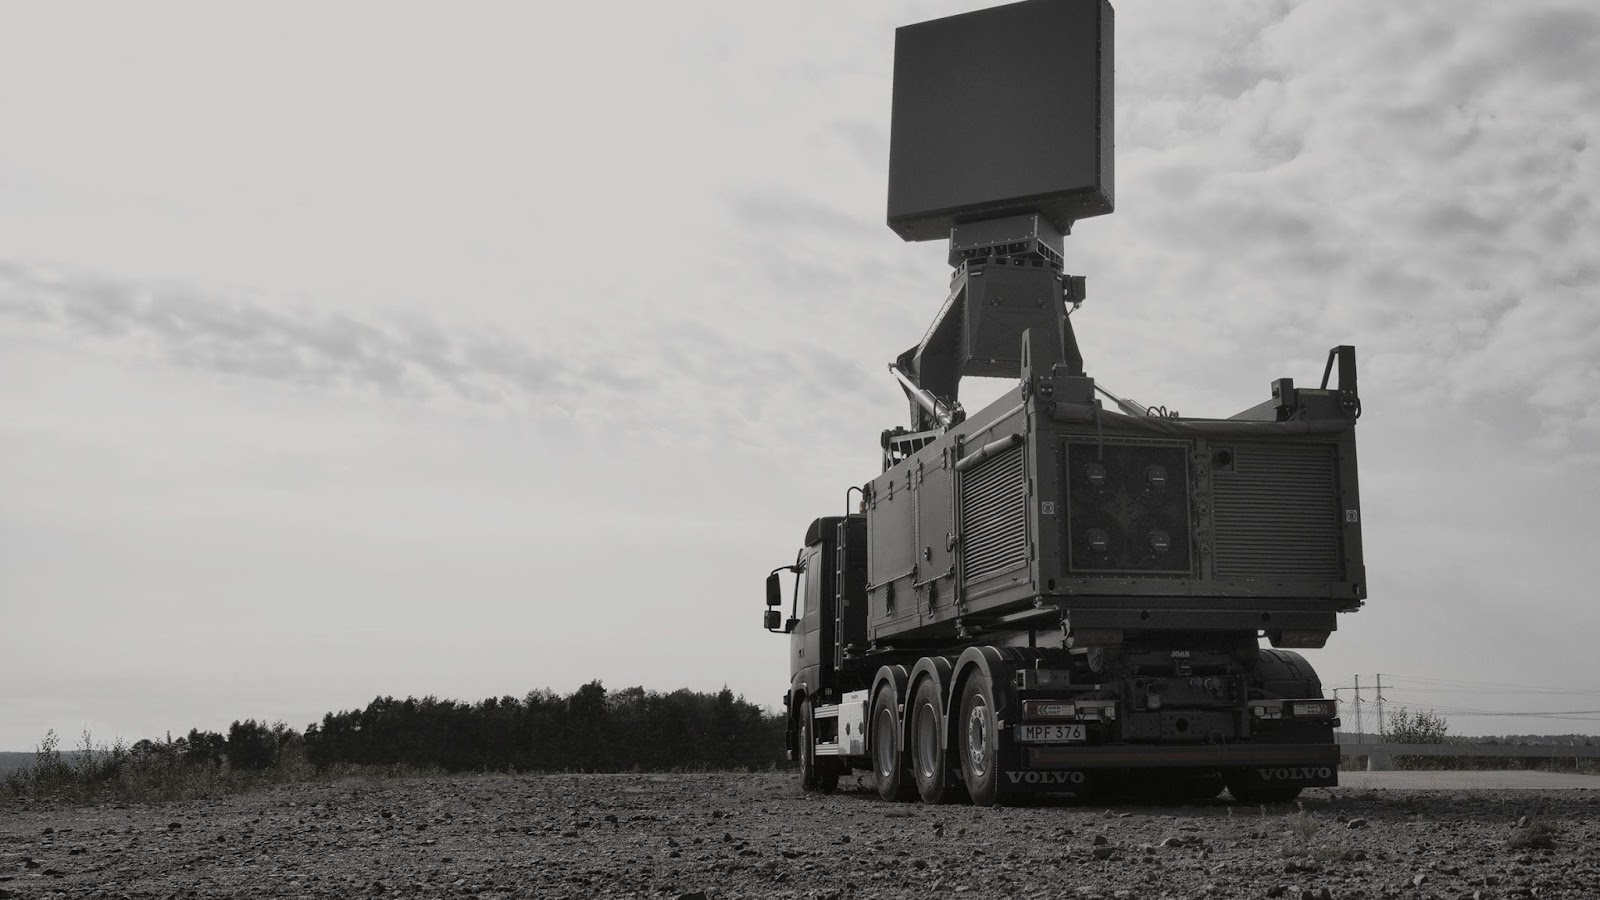  The Giraffe 4A active electronically scanned array radar